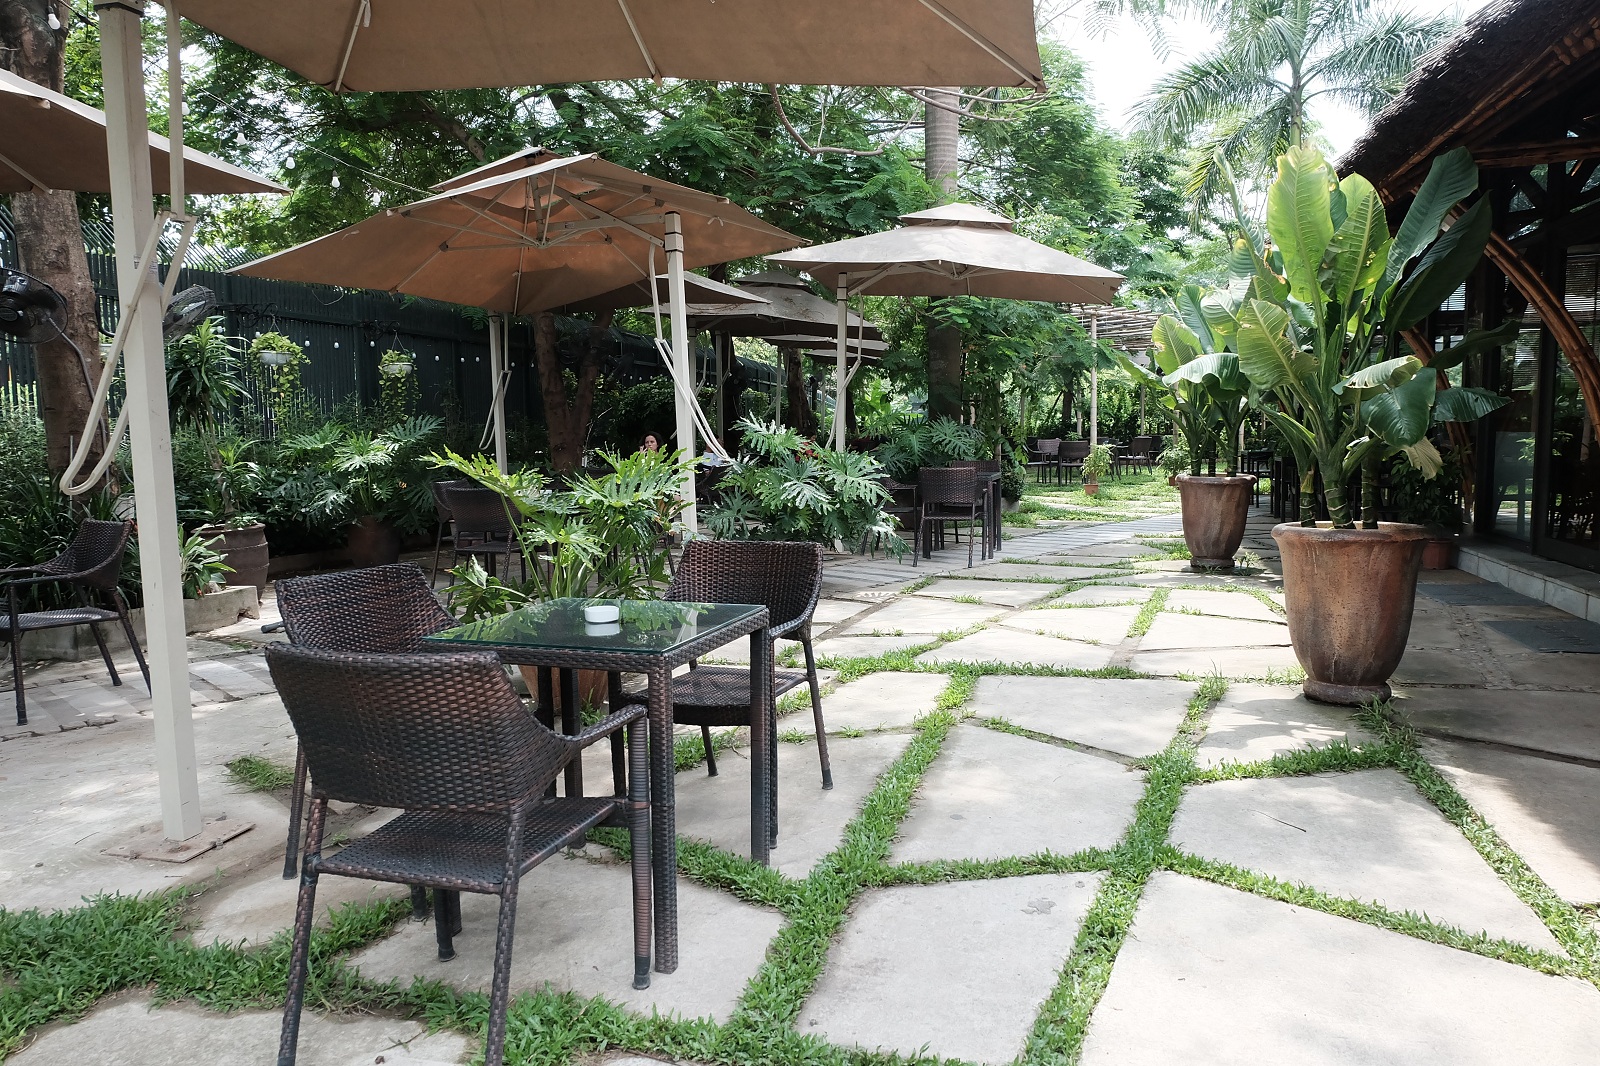 Nằm ngay cạnh Bảo tàng Dân tộc học,p/Fresh Garden Cafe sở hữu không gian rộng rãi, yên tĩnh, mang hơi hướng của các quán cà phê phổ biến tại Việt Nam.